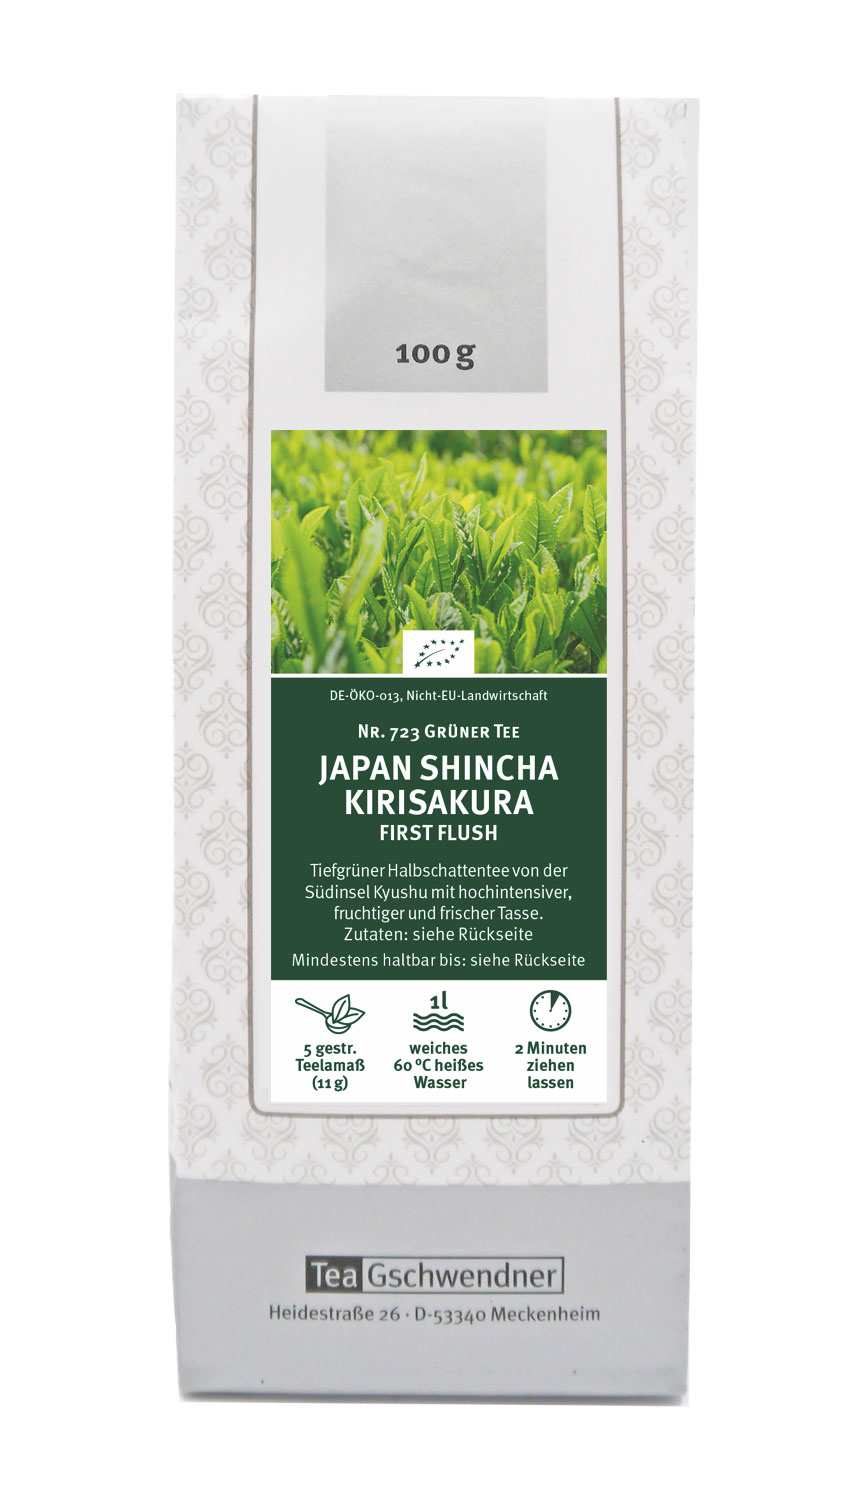 Japan Shincha Kirisakura First Flush organic